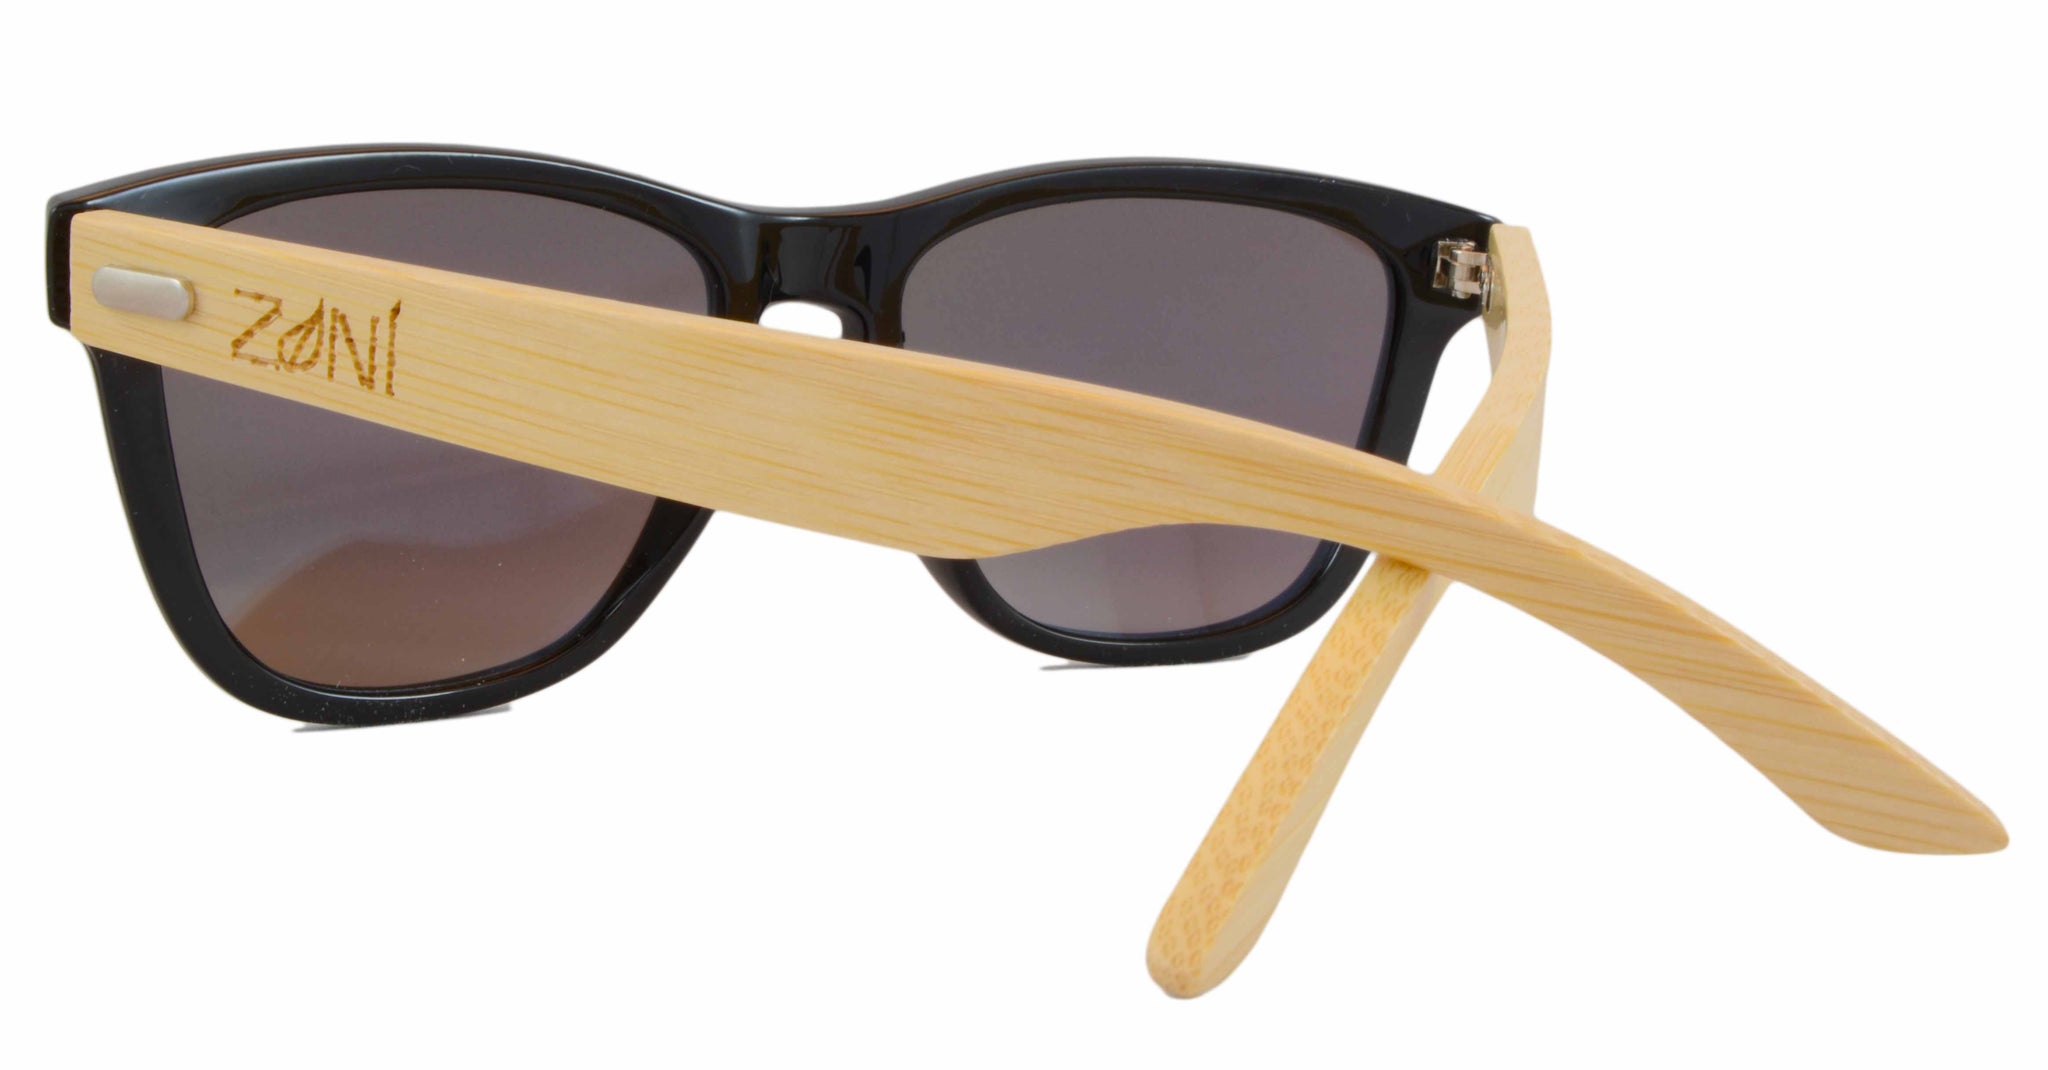 Bamboo Sunglasses Swell Zoni Wear